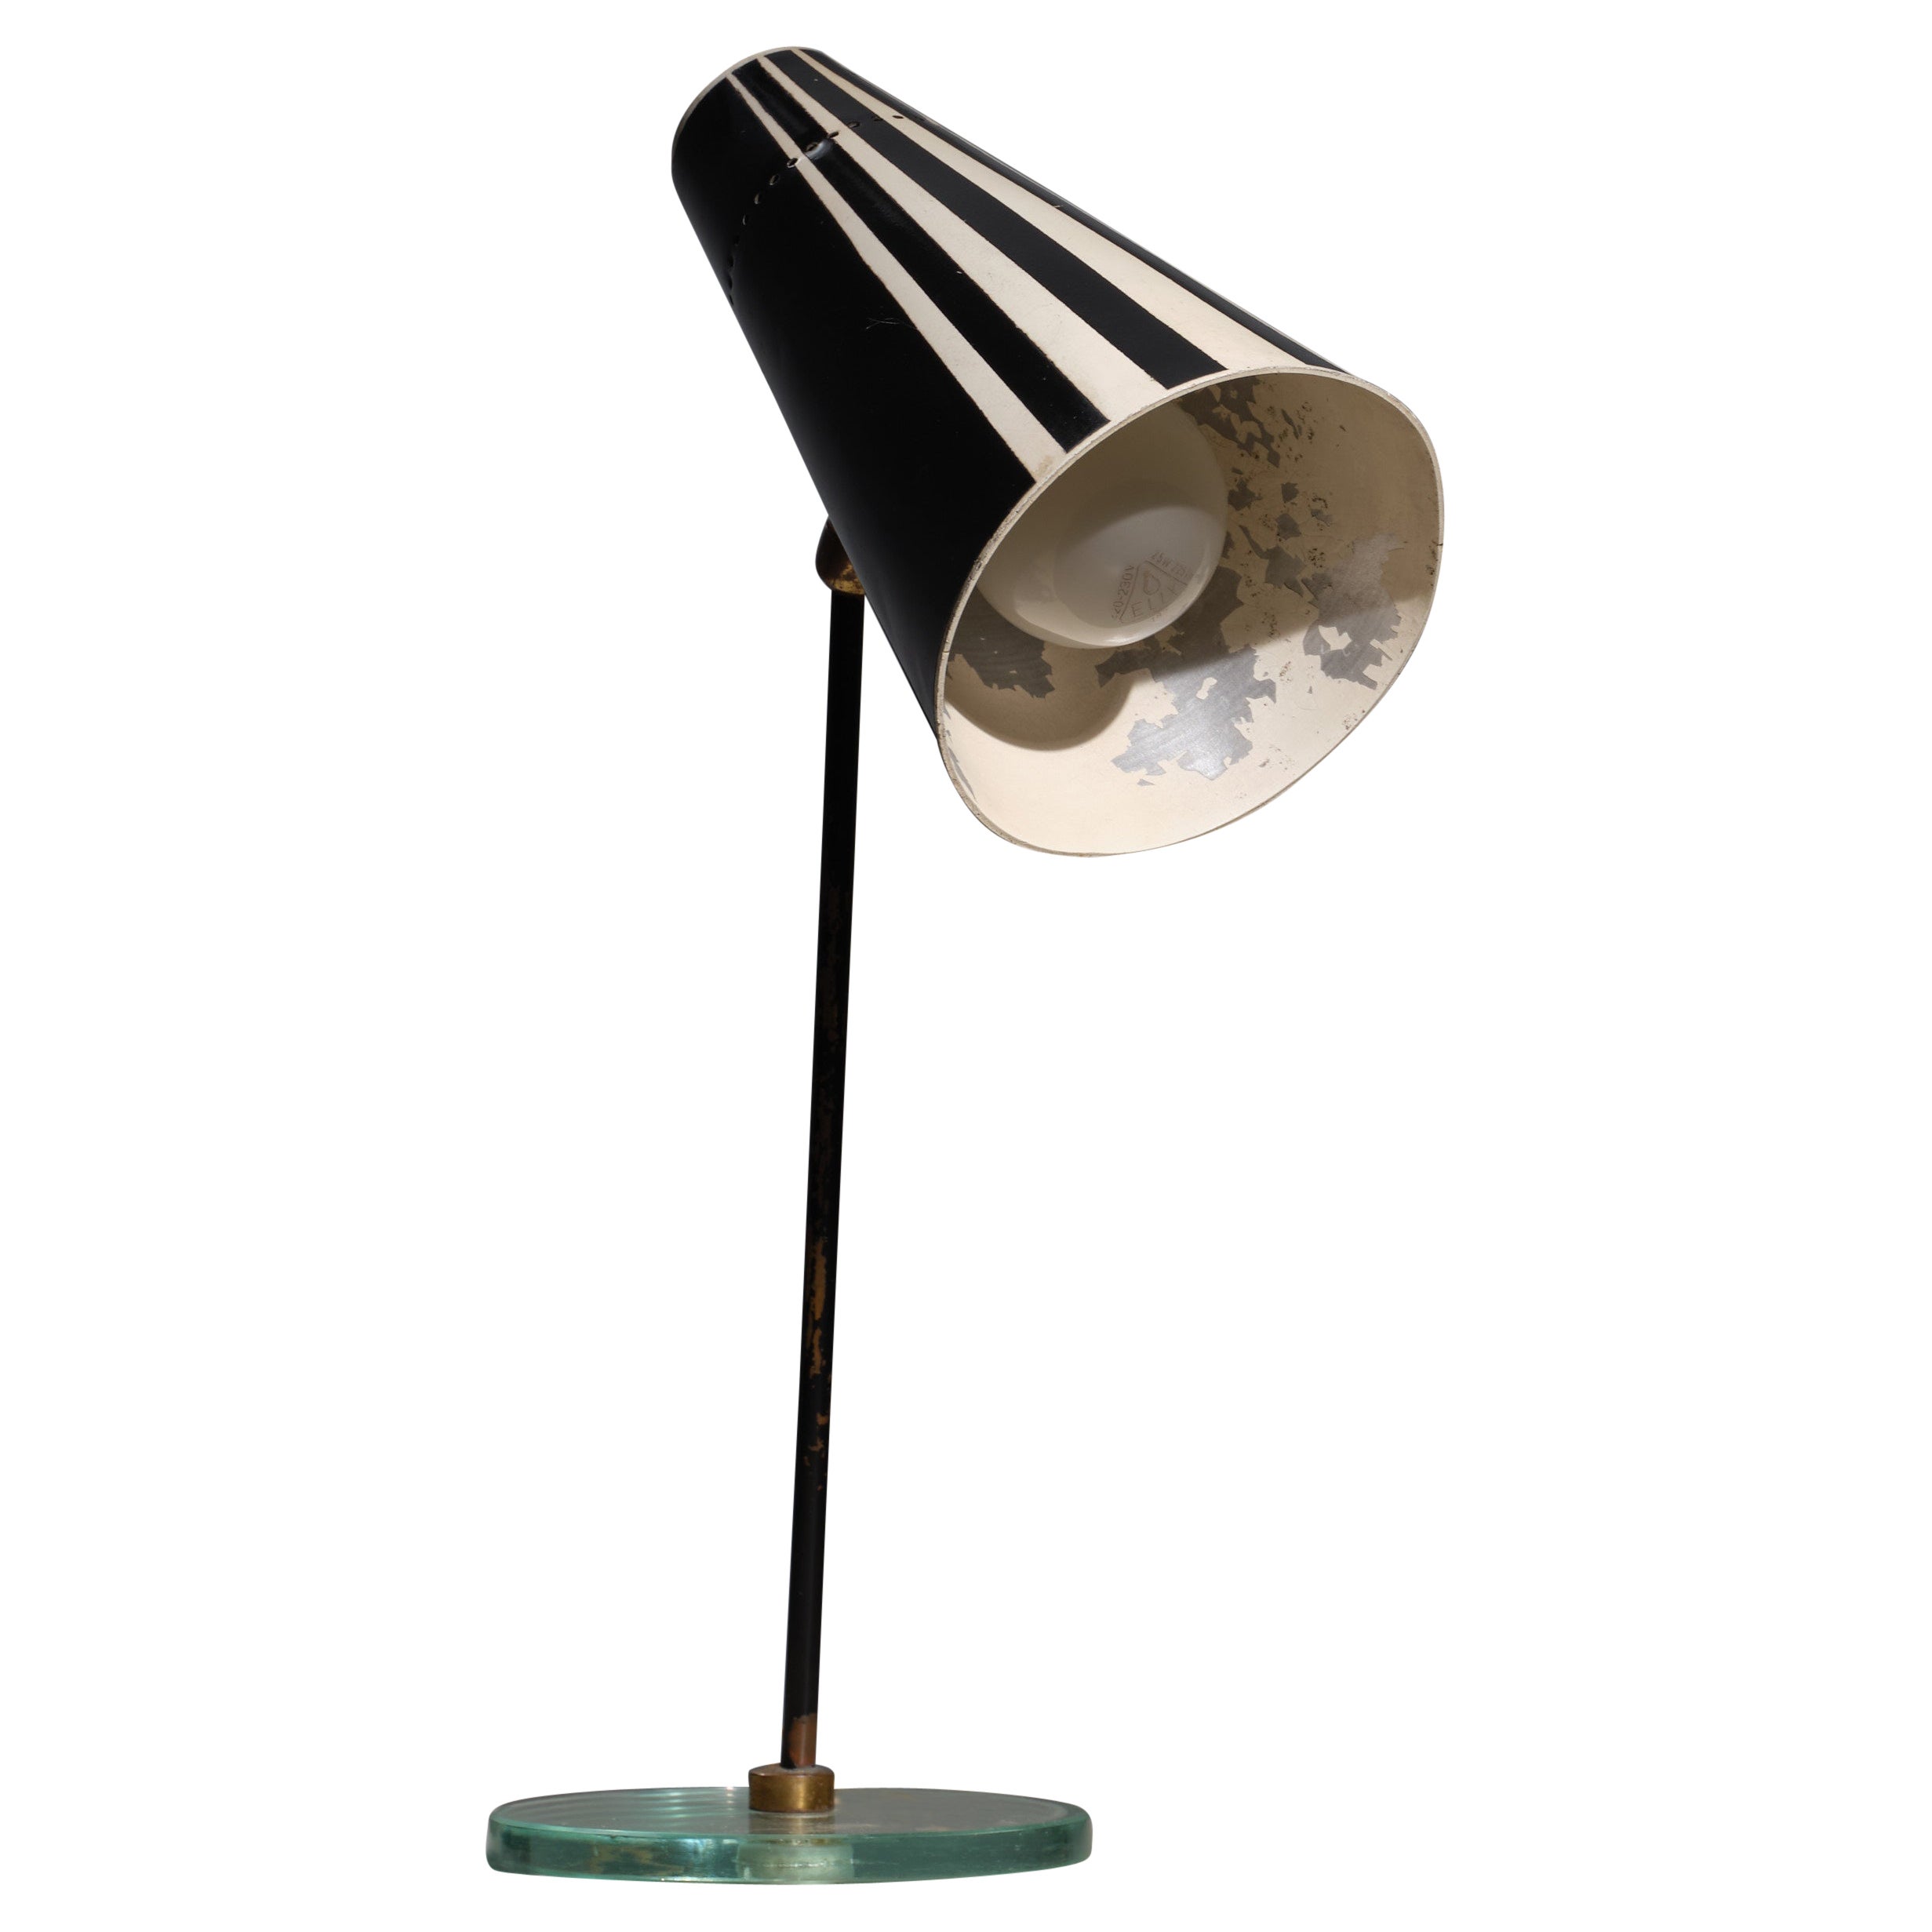 Italienische Tischlampe aus emailliertem Stahl und Messing aus den 1950er Jahren: Exquisite Eleganz